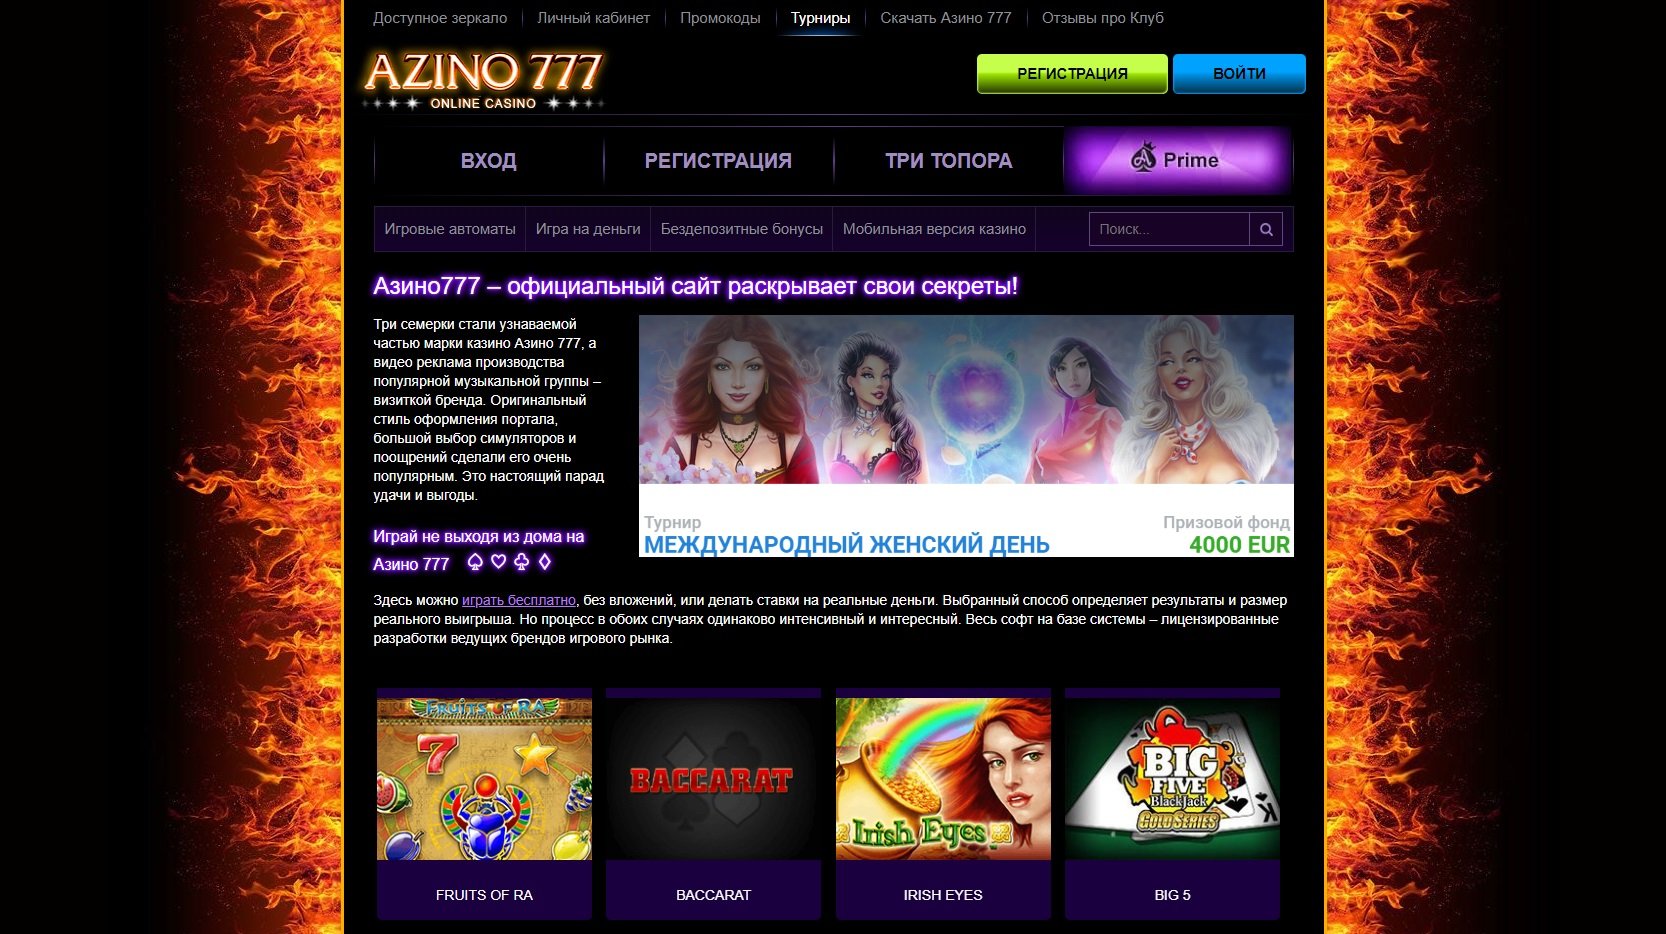 Azino777 мобильная версия вход casino play casino покердом скачать мобильную версию